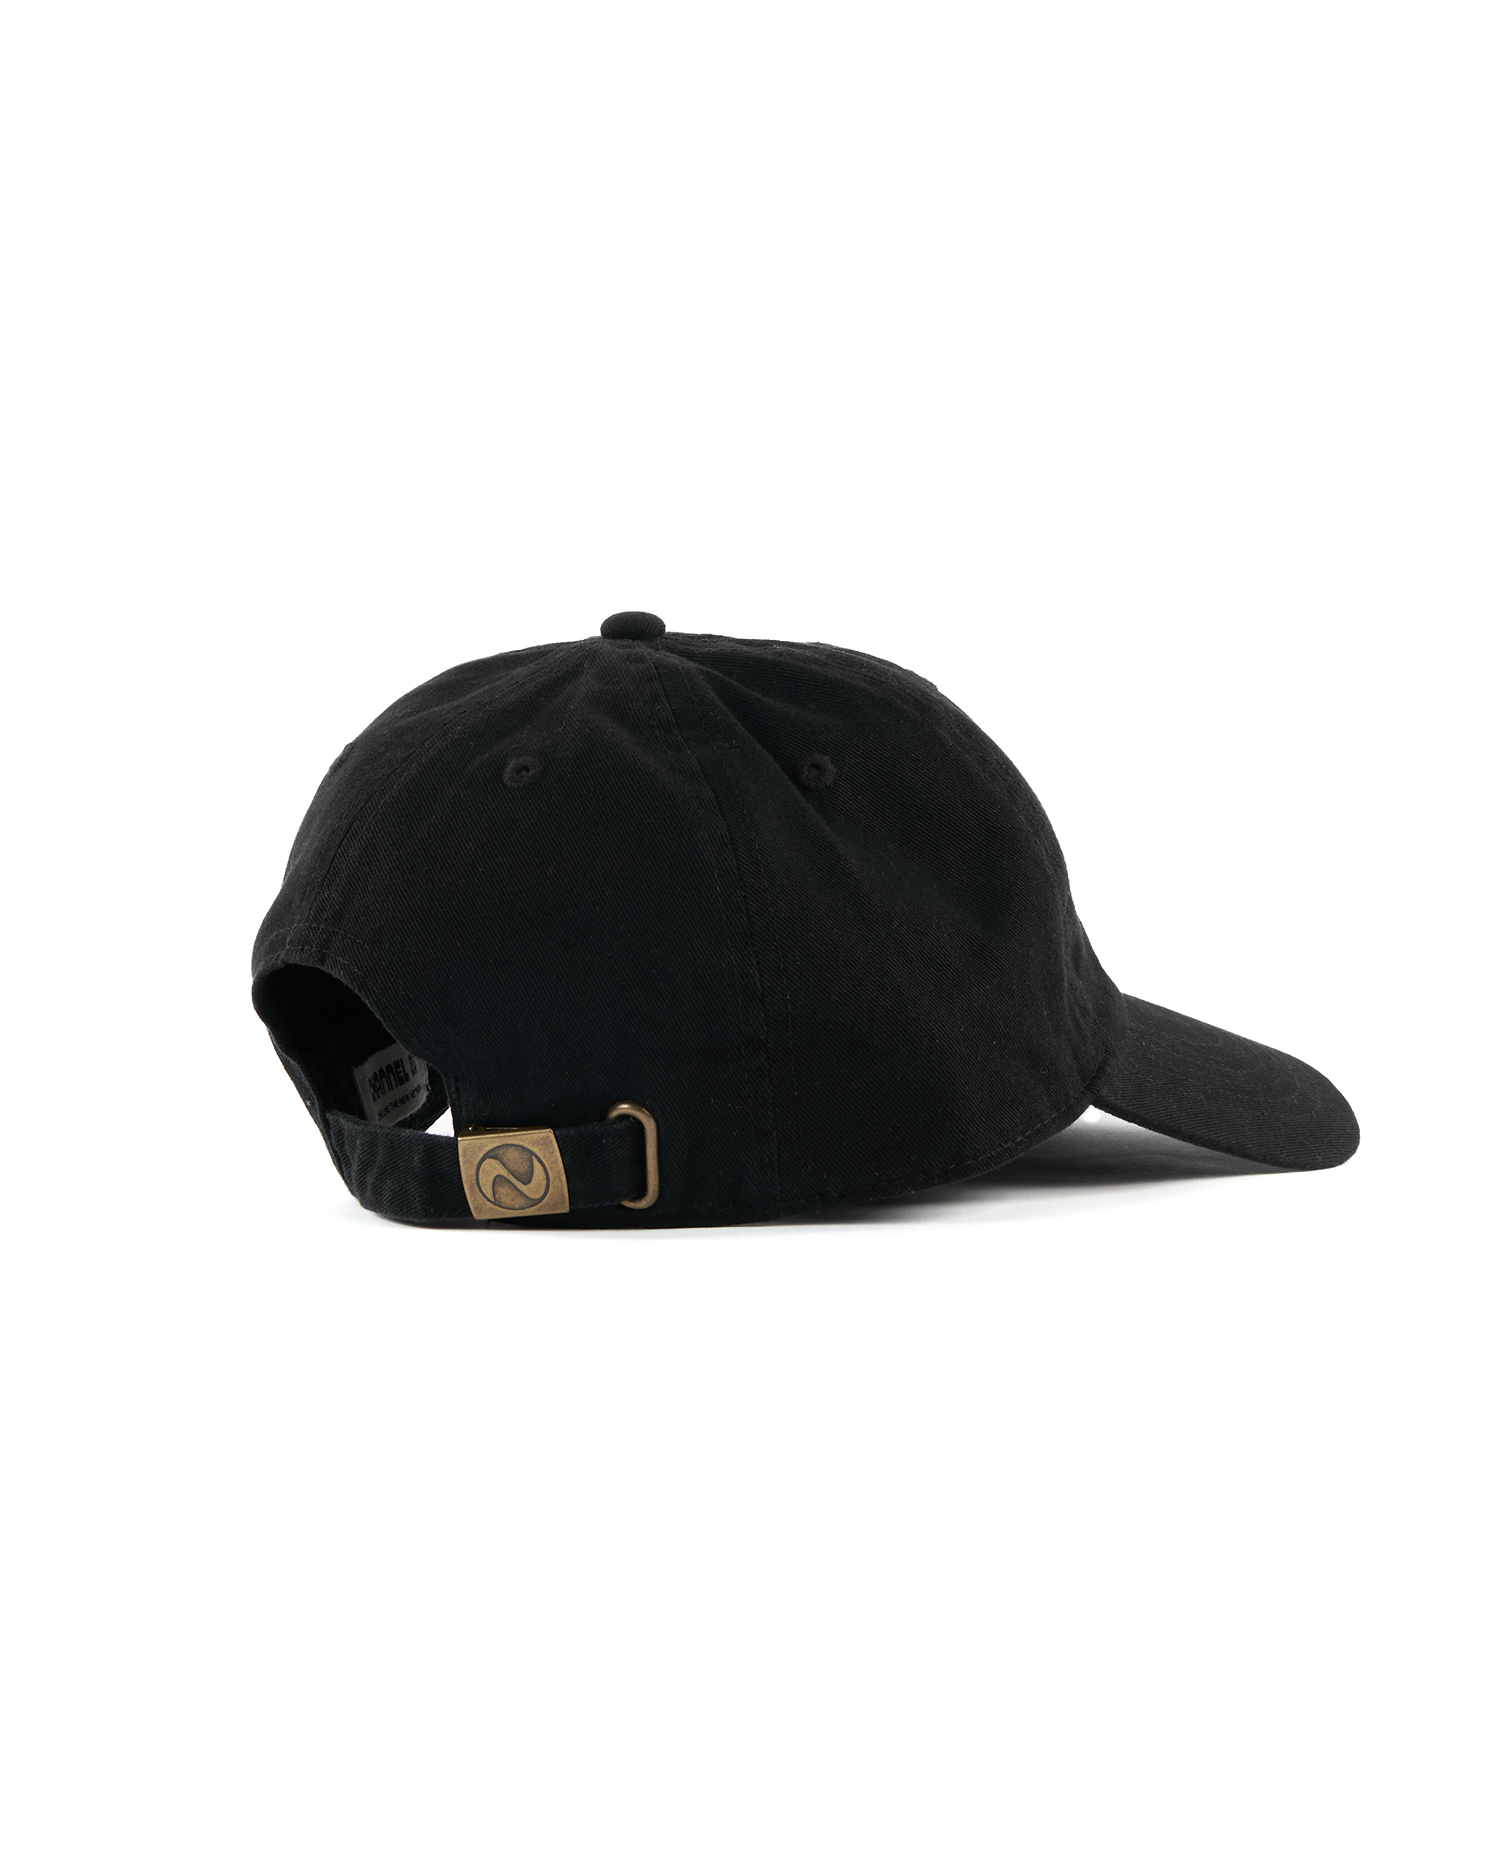 Seeking Logo Woven Hat - Black